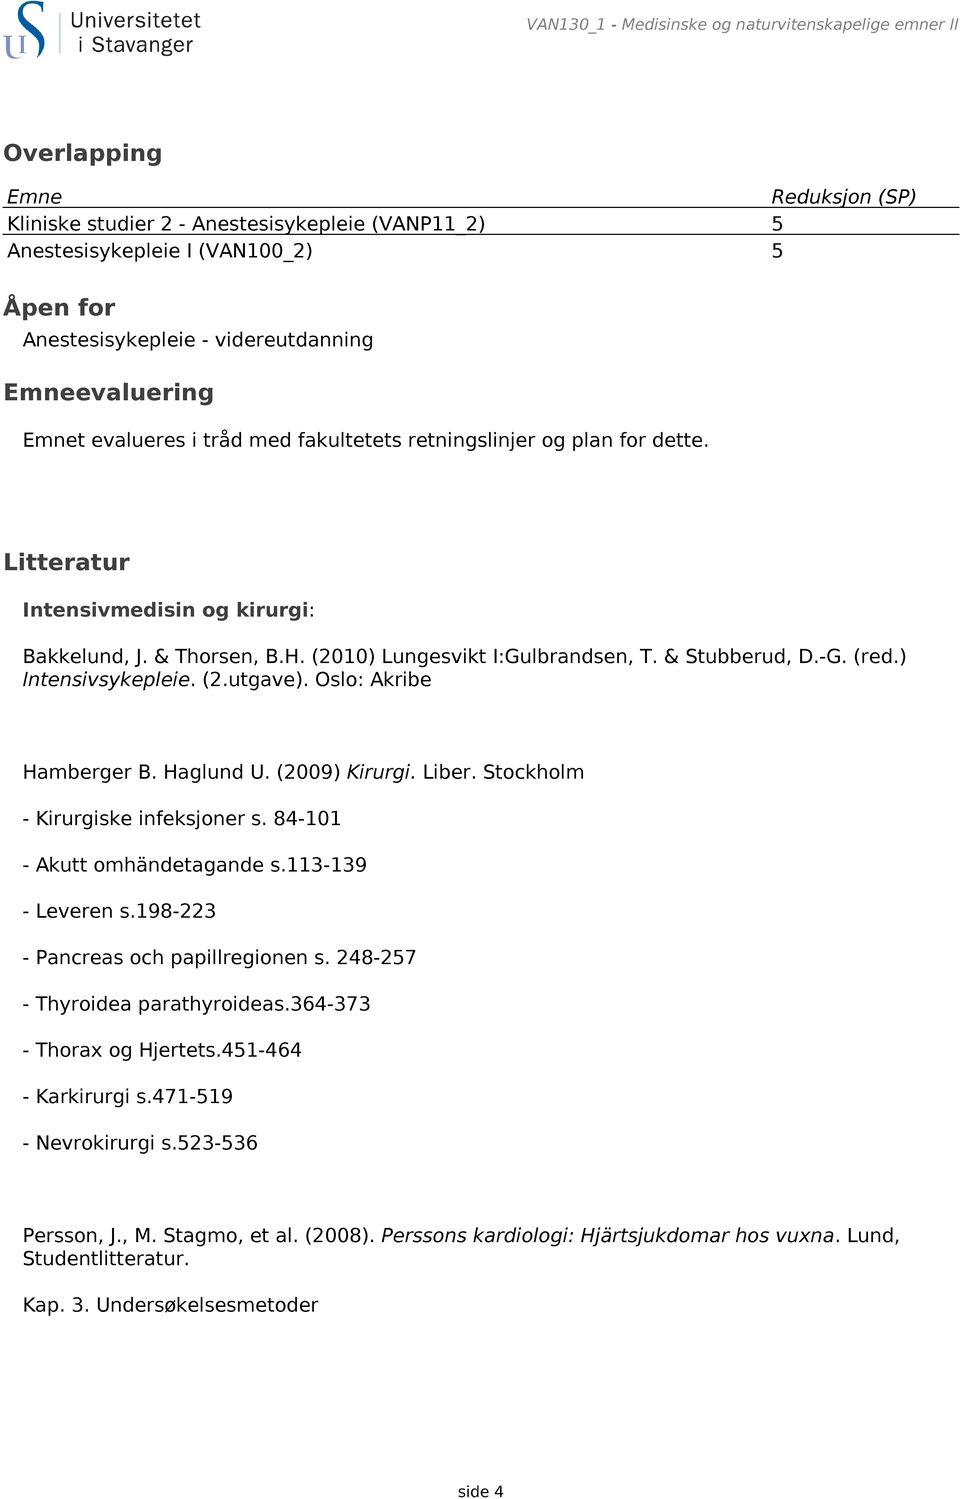 (2010) Lungesvikt I:Gulbrandsen, T. & Stubberud, D.-G. (red.) Intensivsykepleie. (2.utgave). Oslo: Akribe Hamberger B. Haglund U. (2009) Kirurgi. Liber. Stockholm - Kirurgiske infeksjoner s.